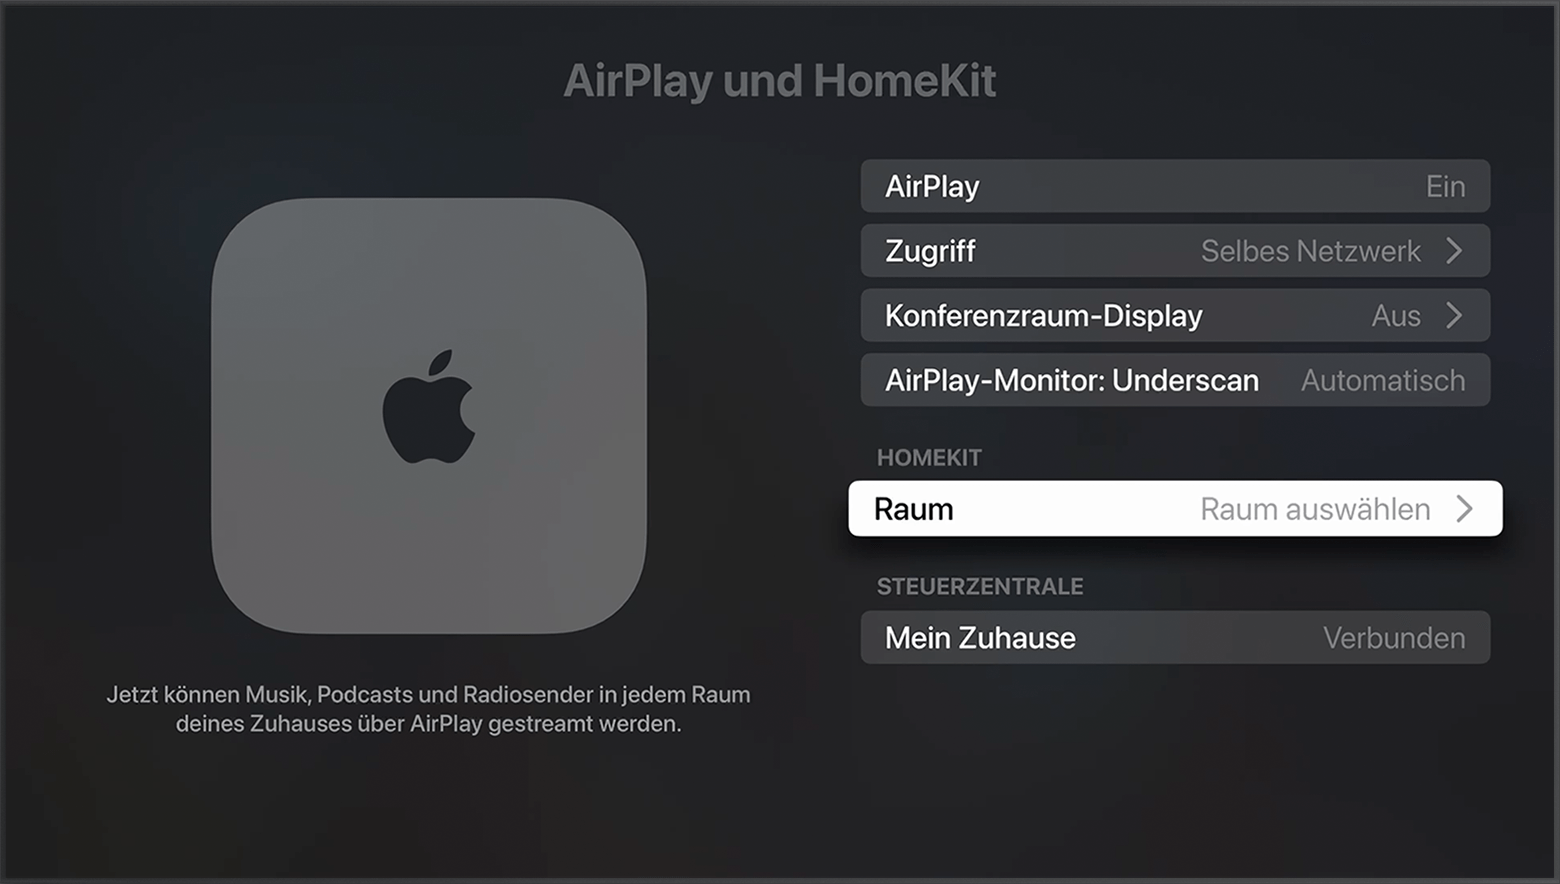 „Raum“ unter „HomeKit“ auf dem AirPlay- und HomeKit-Bildschirm in den Apple TV-Einstellungen